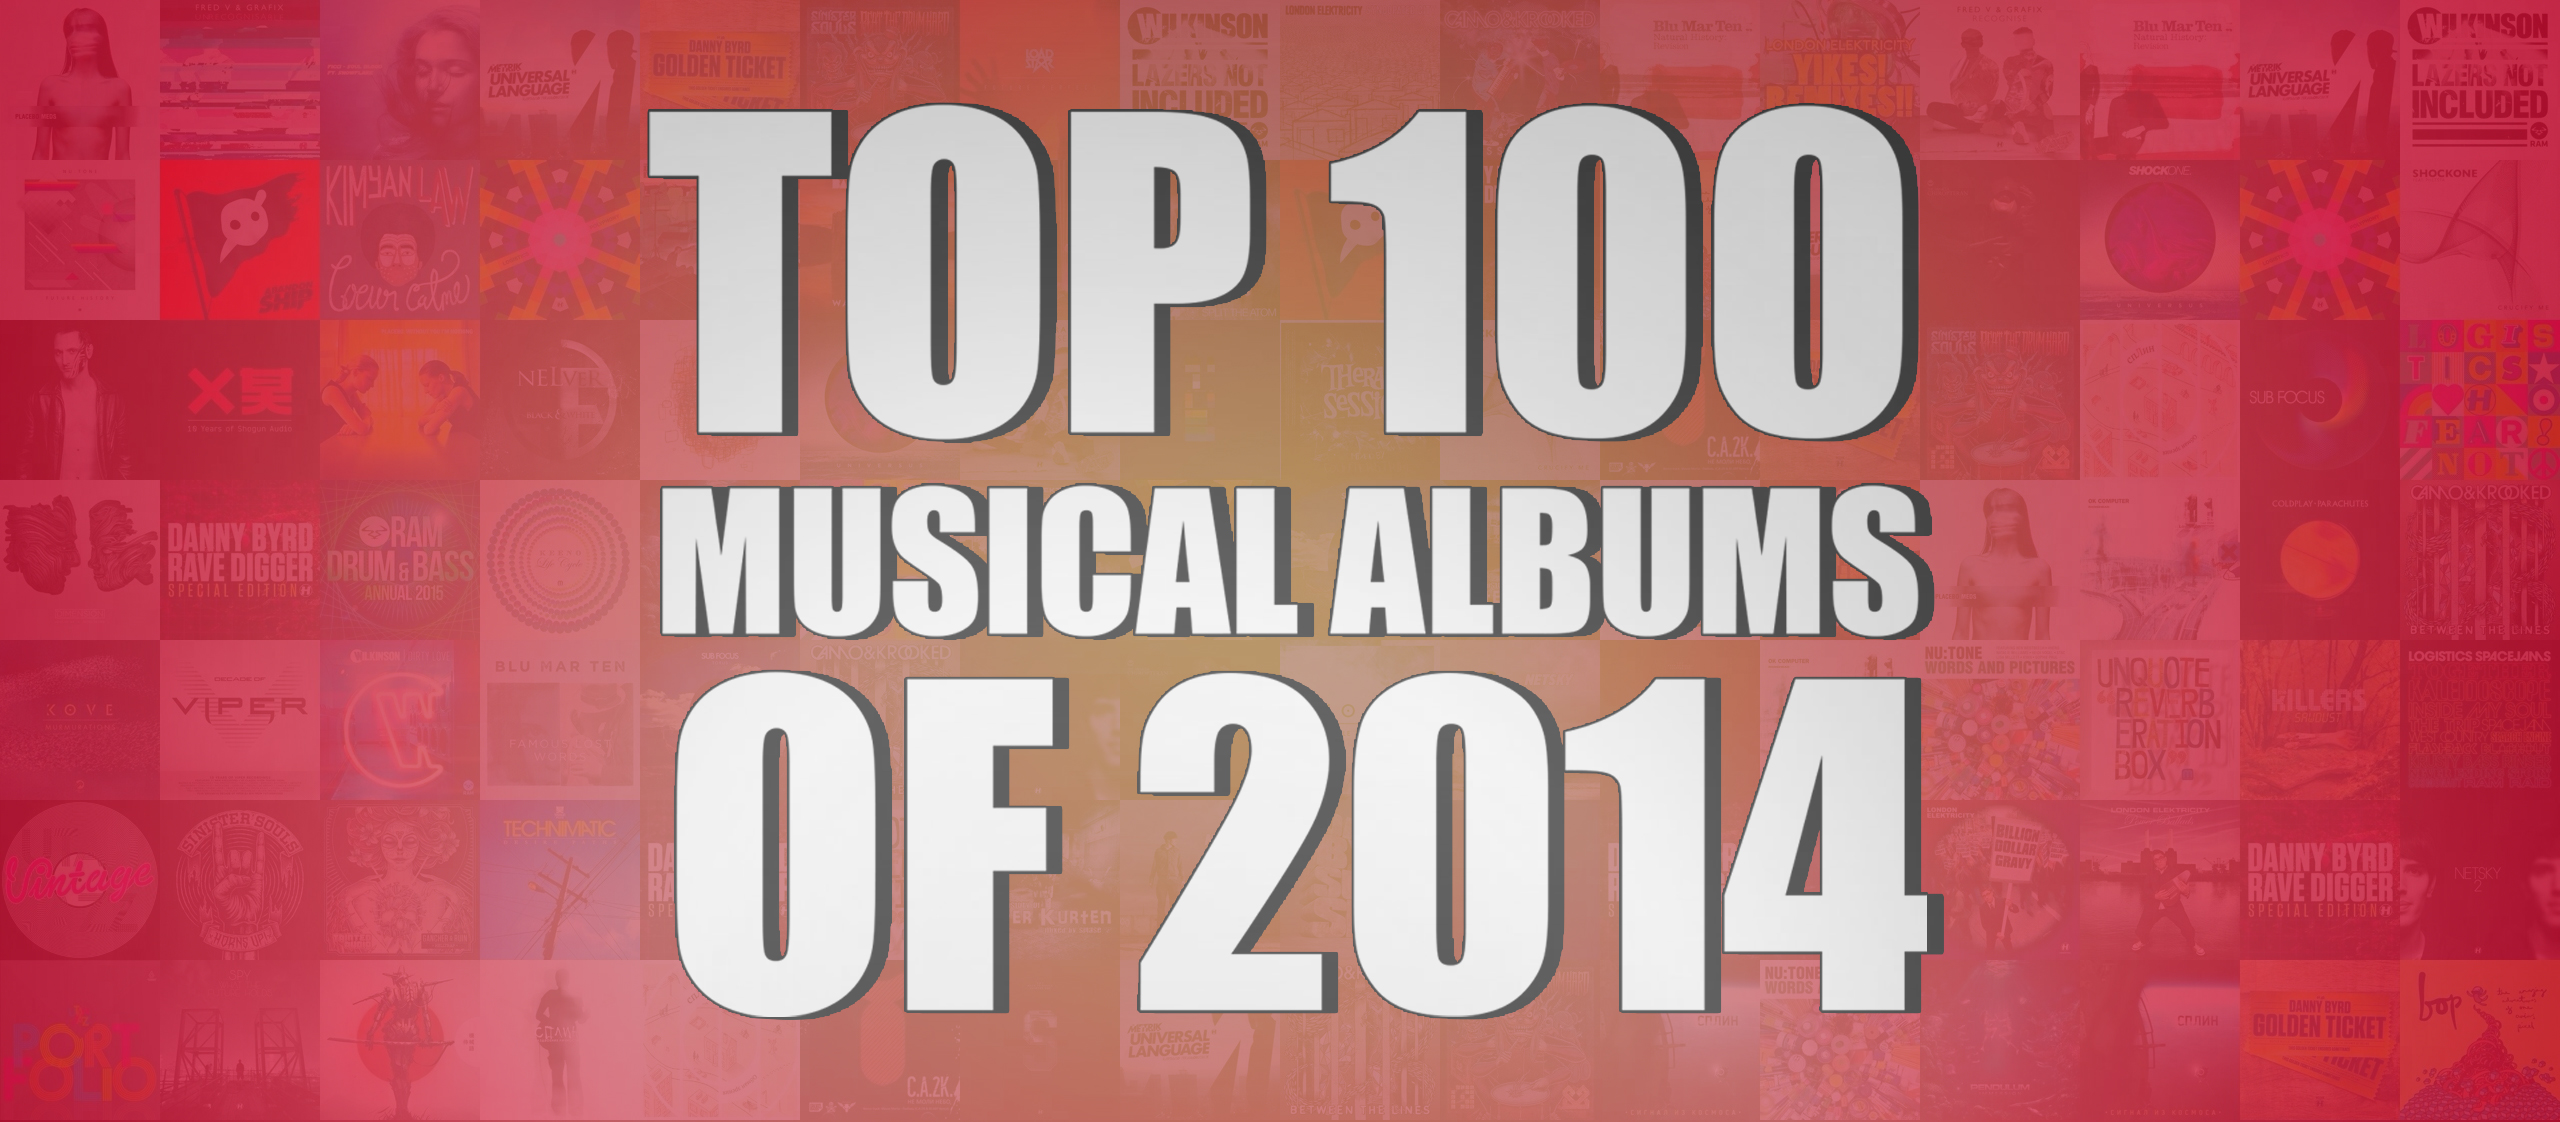 ТОП 100 МУЗЫКАЛЬНЫХ АЛЬБОМОВ 2014
		ПО МОЕЙ ВЕРСИИ / TOP 100 Musical Albums of 2014 version by Splase